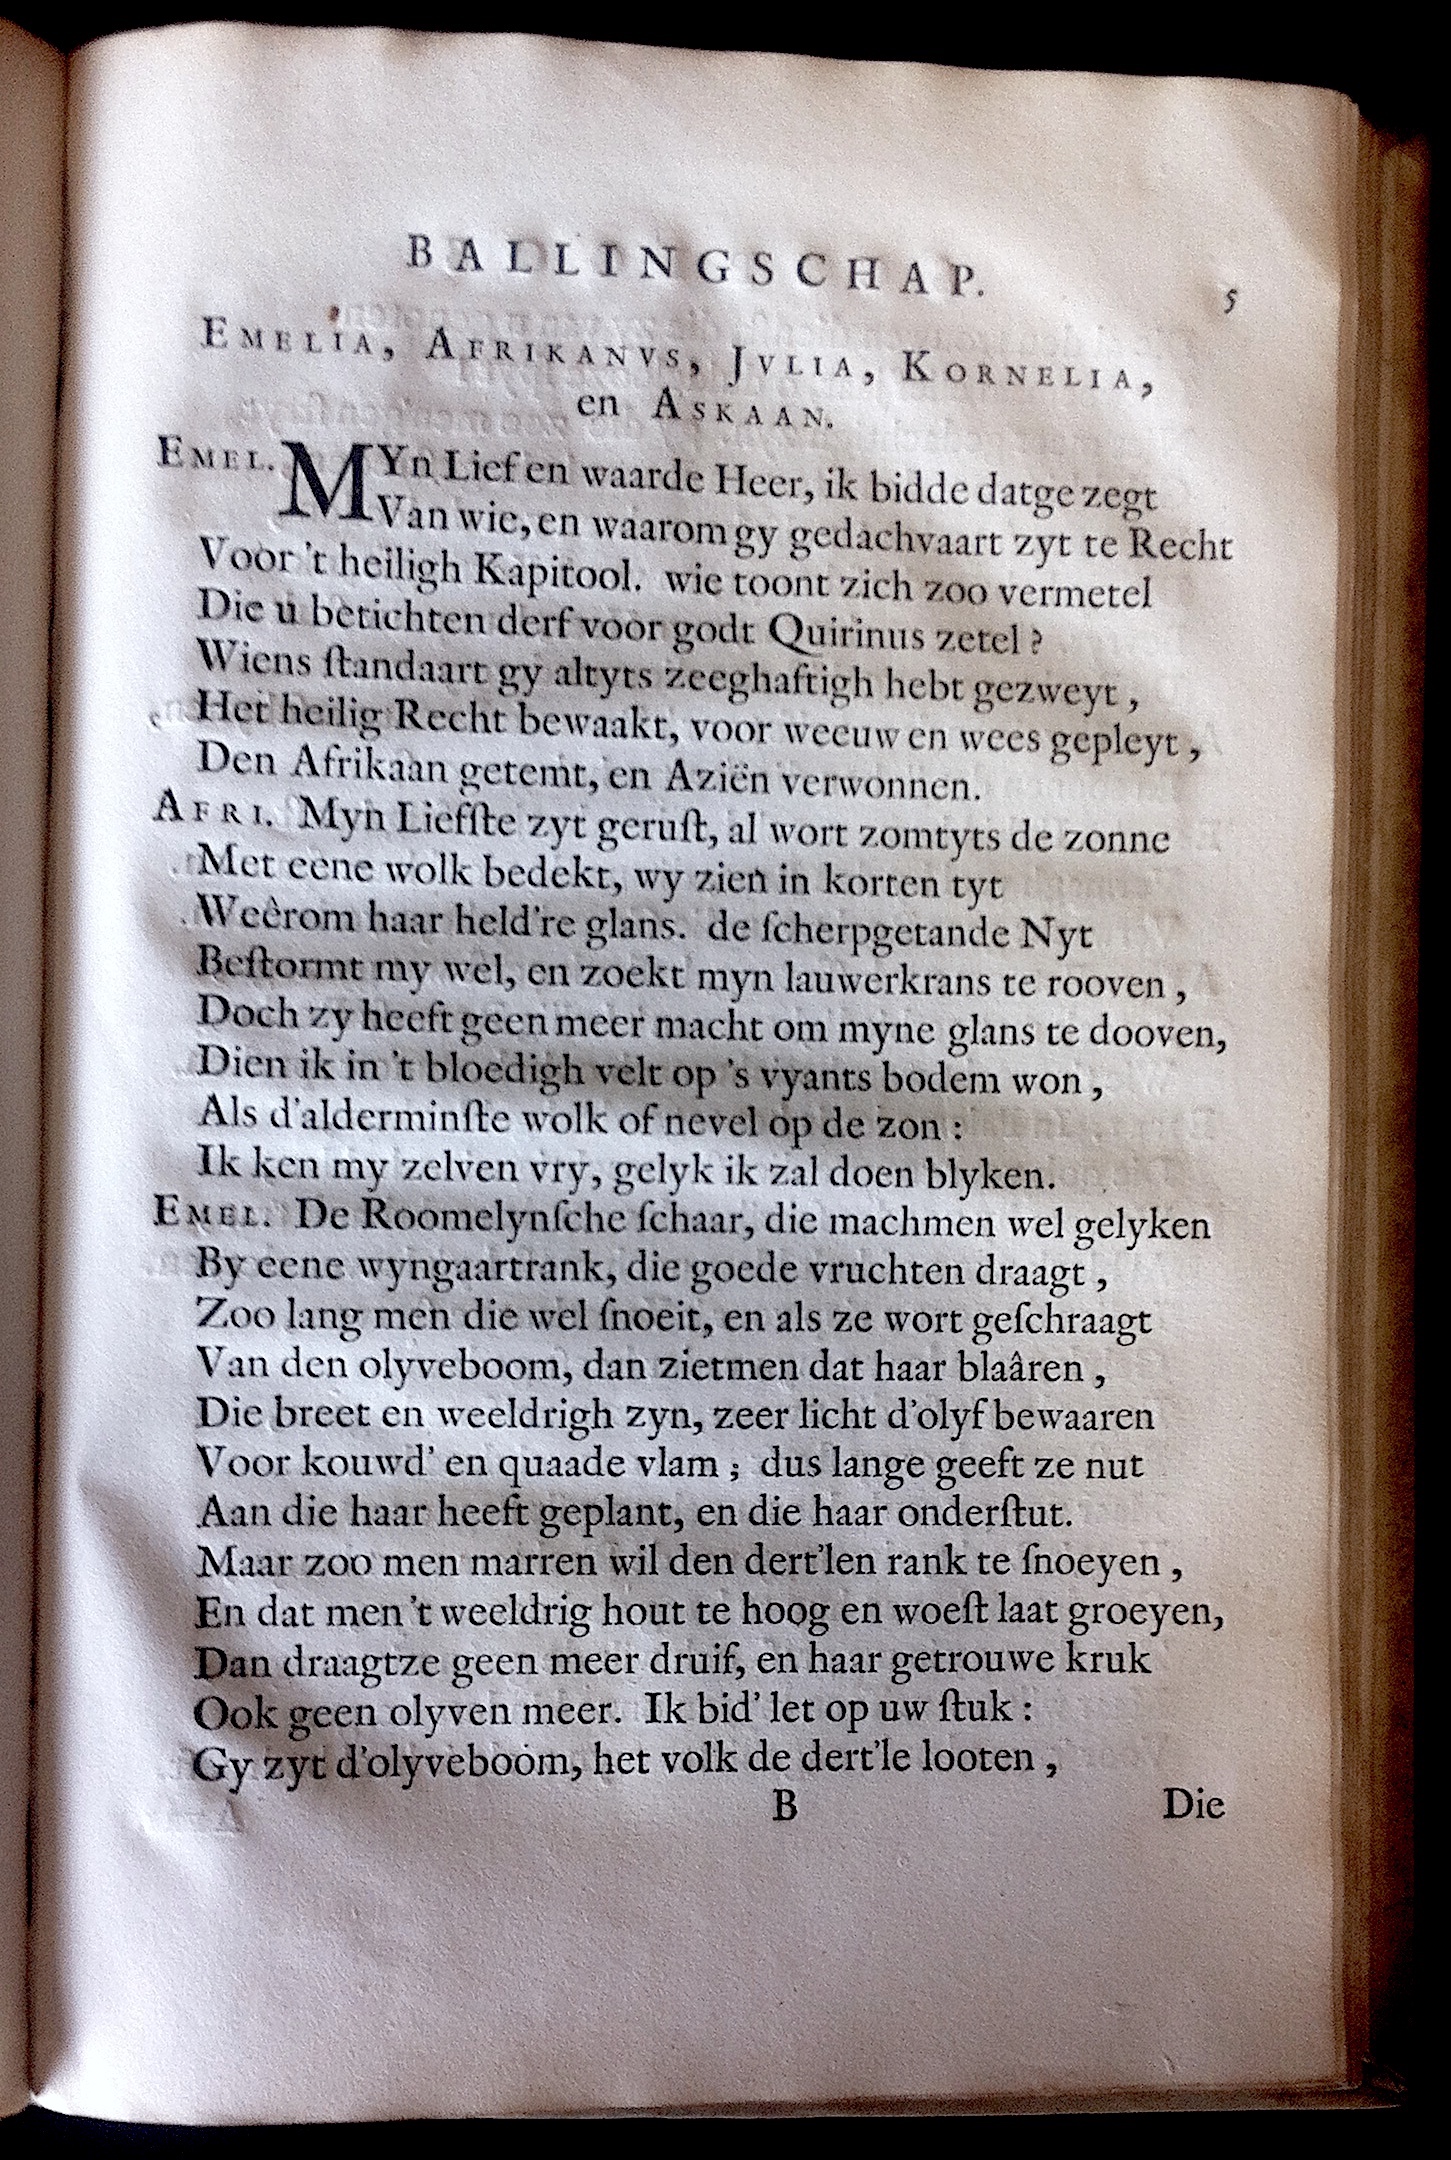 BoccardScipioFolio1658p05.jpg